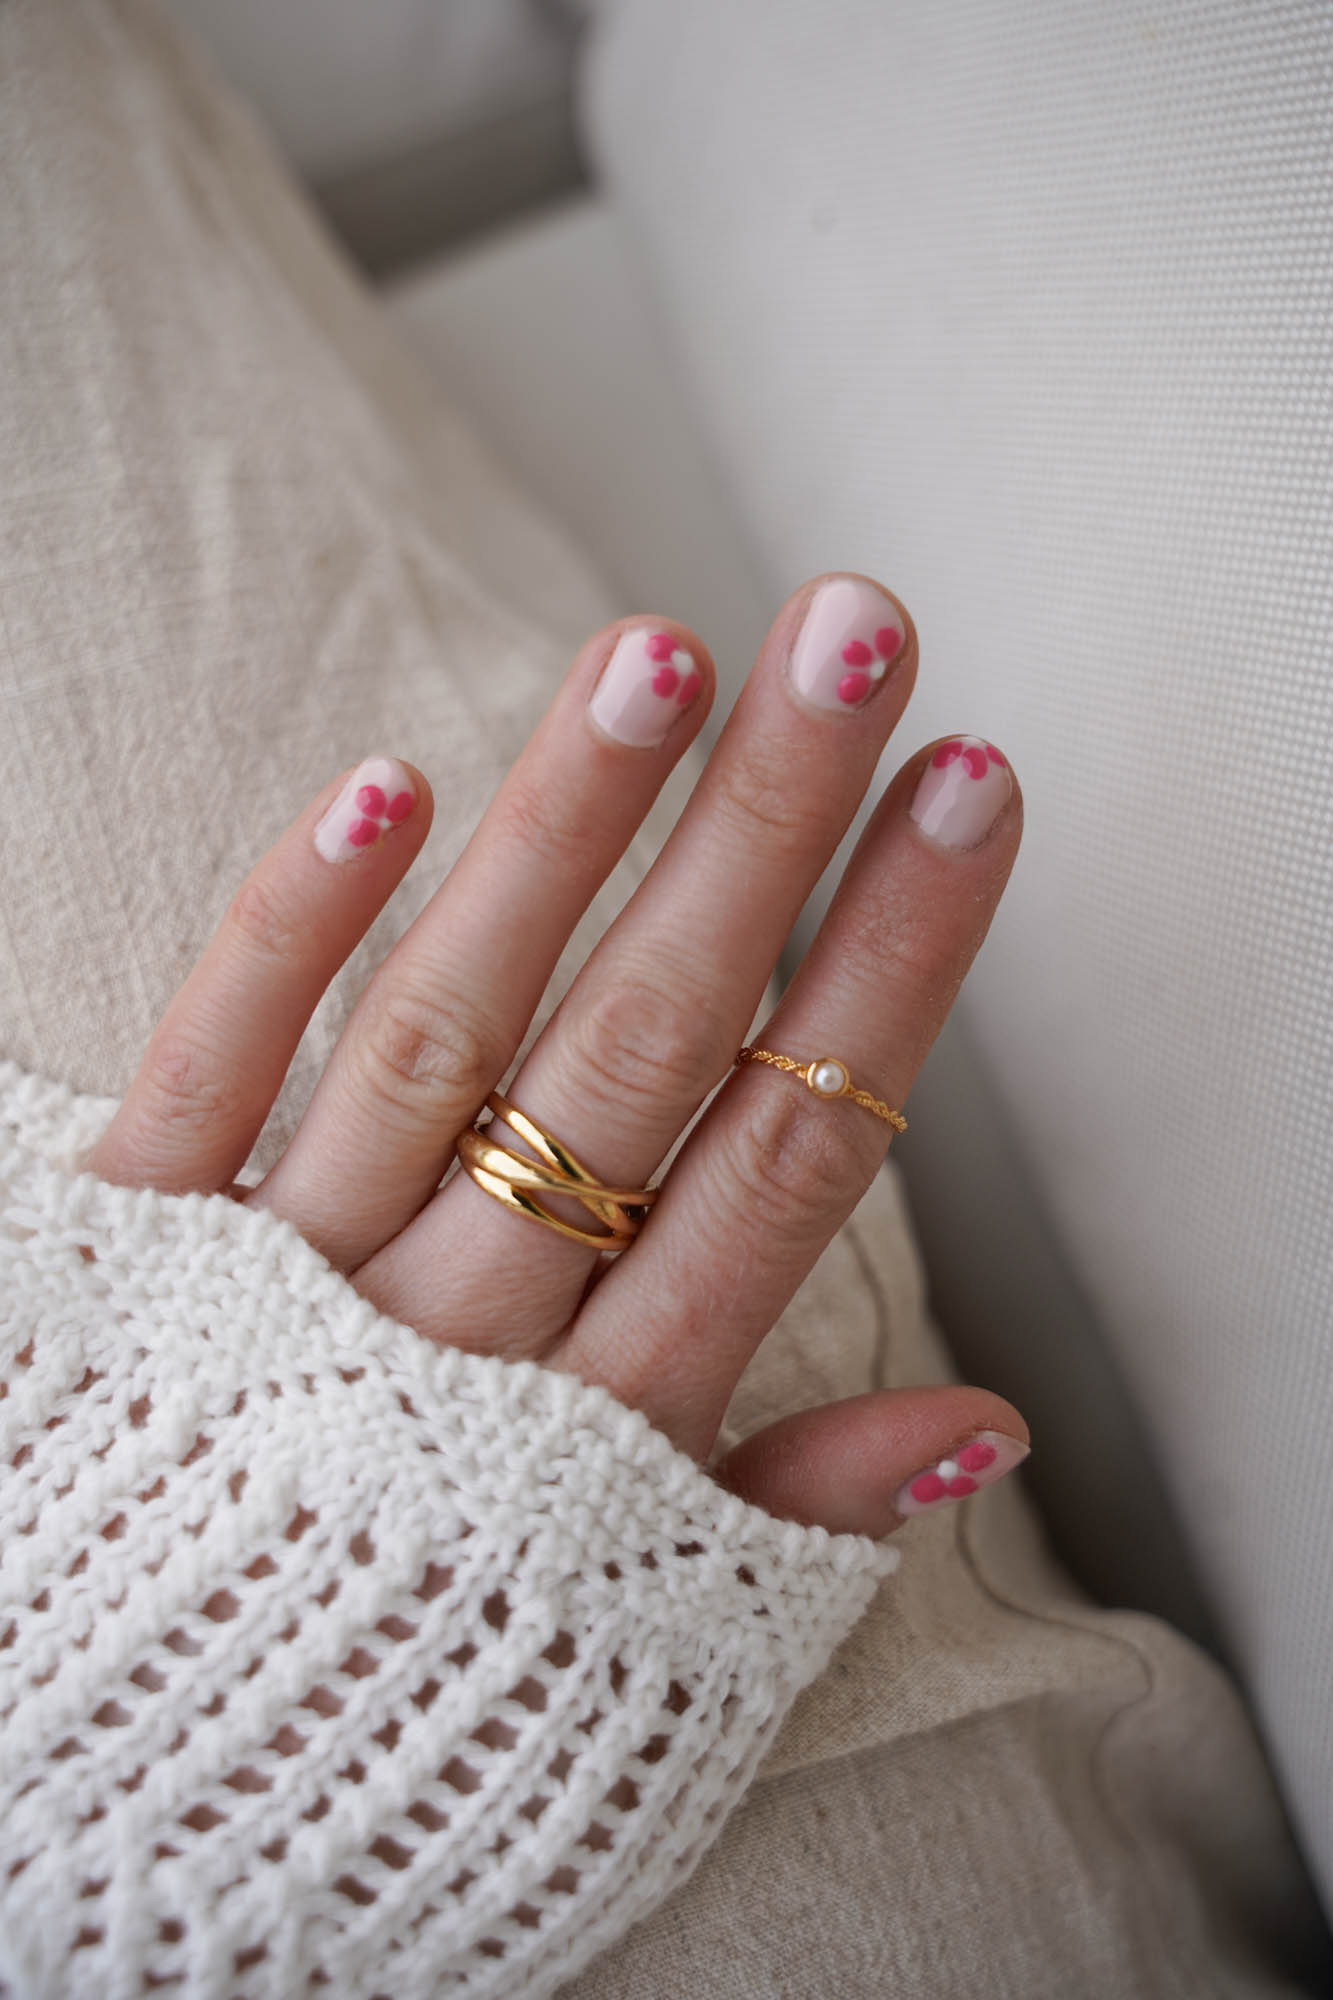 Flower nails, spring nails pink nails nude nails nail design nail art Alessandro Striplac